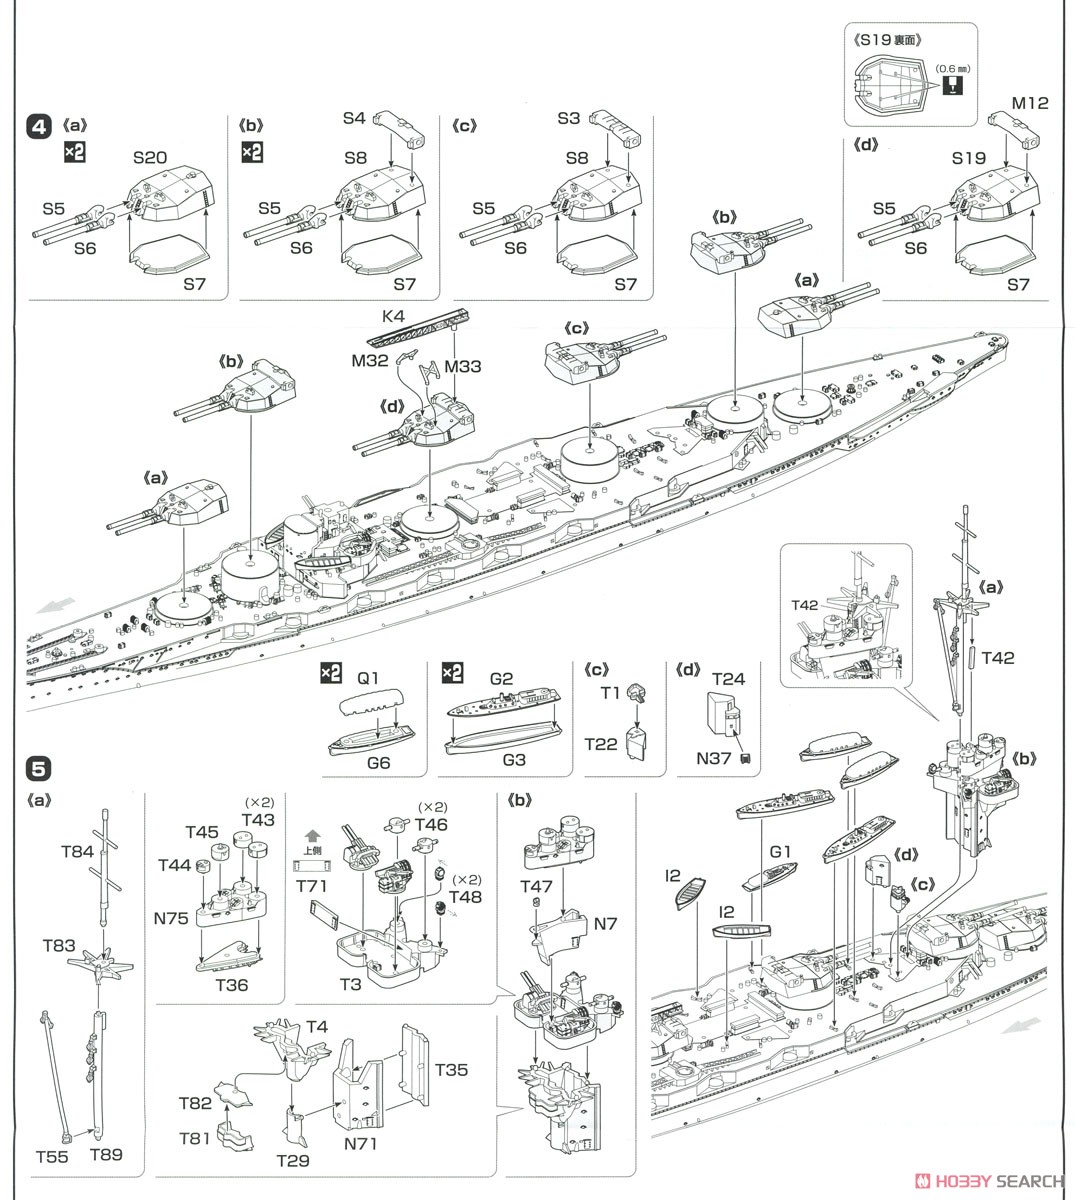 日本海軍戦艦 扶桑 (昭和10年/13年) (プラモデル) 設計図2